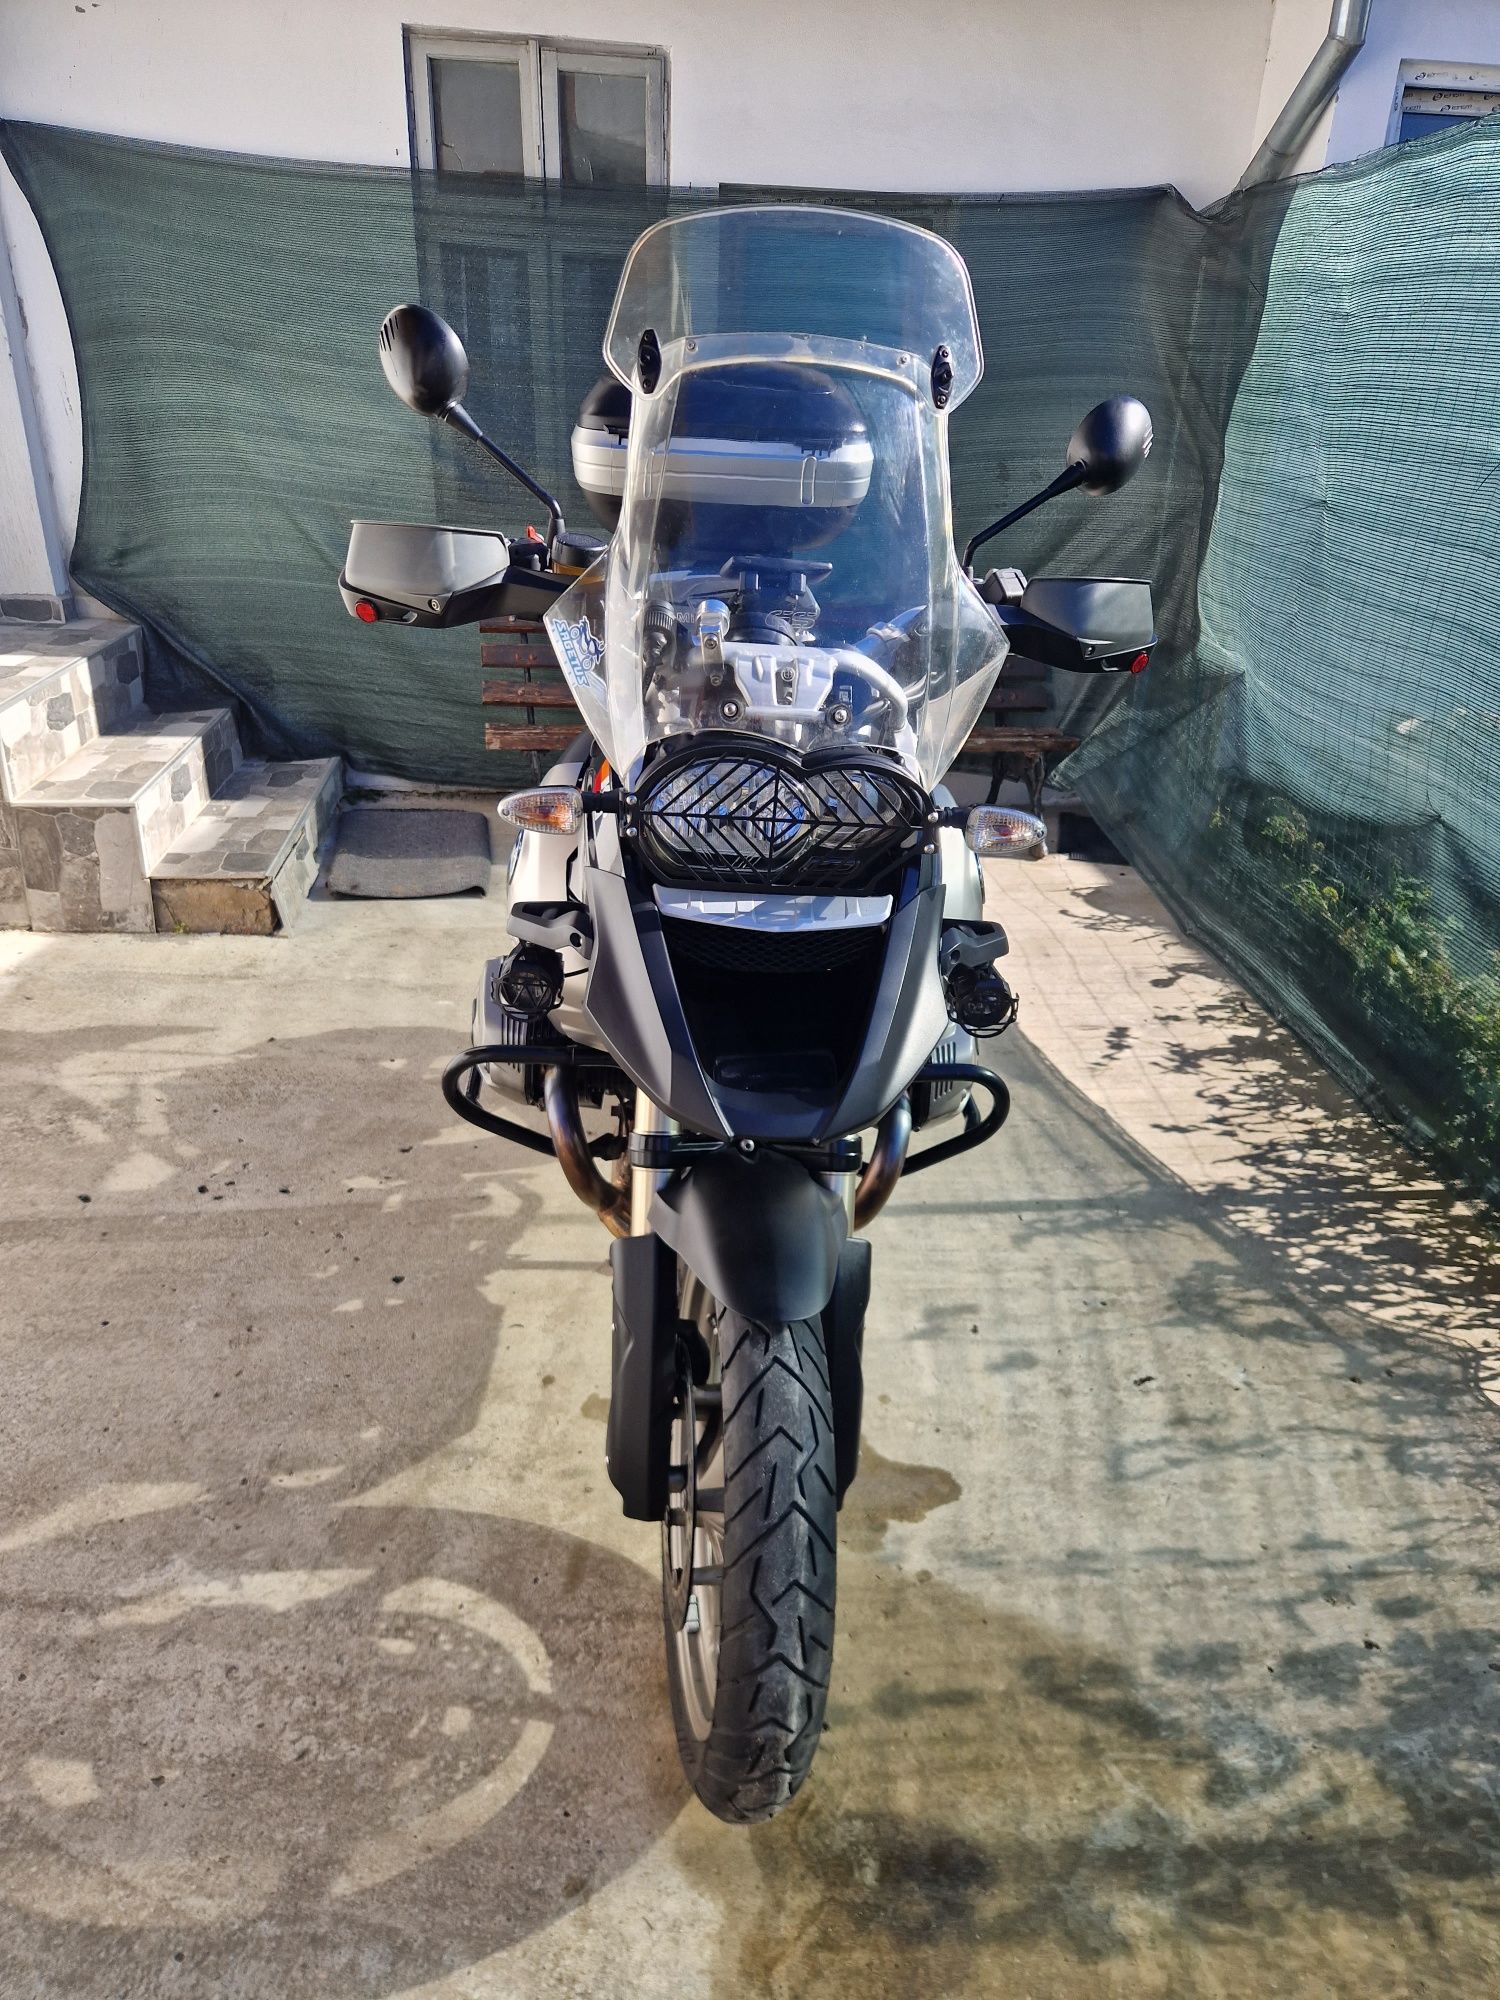 Motocicleta bmw r1200gs